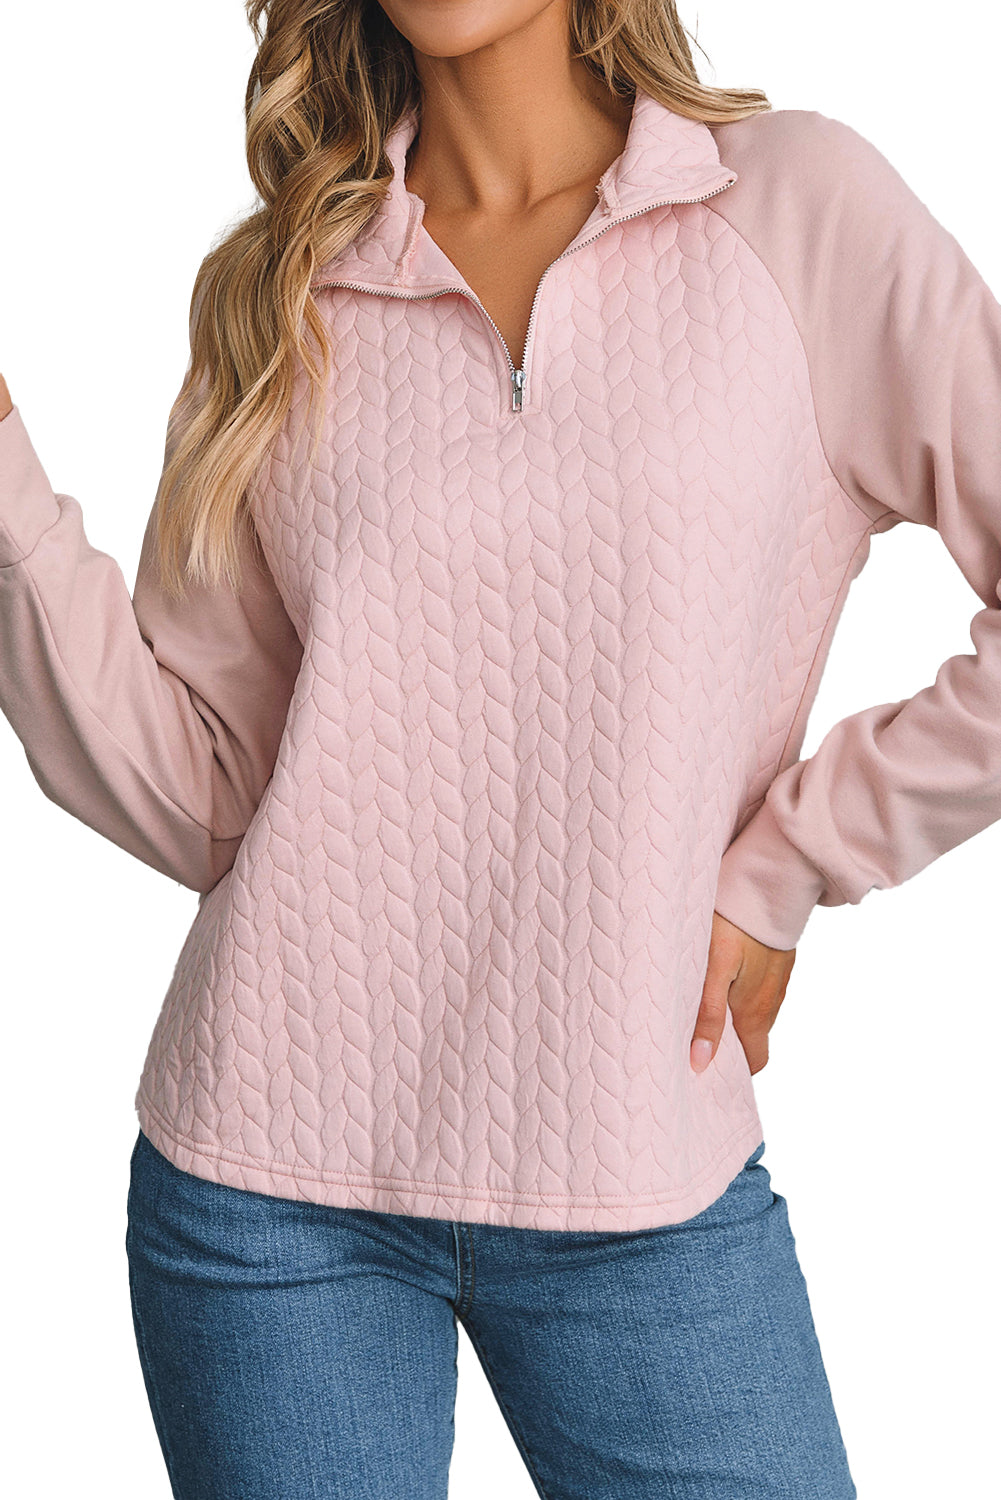 Hellkastanienfarbenes, strukturiertes Sweatshirt mit Raglanärmeln und Viertelreißverschluss